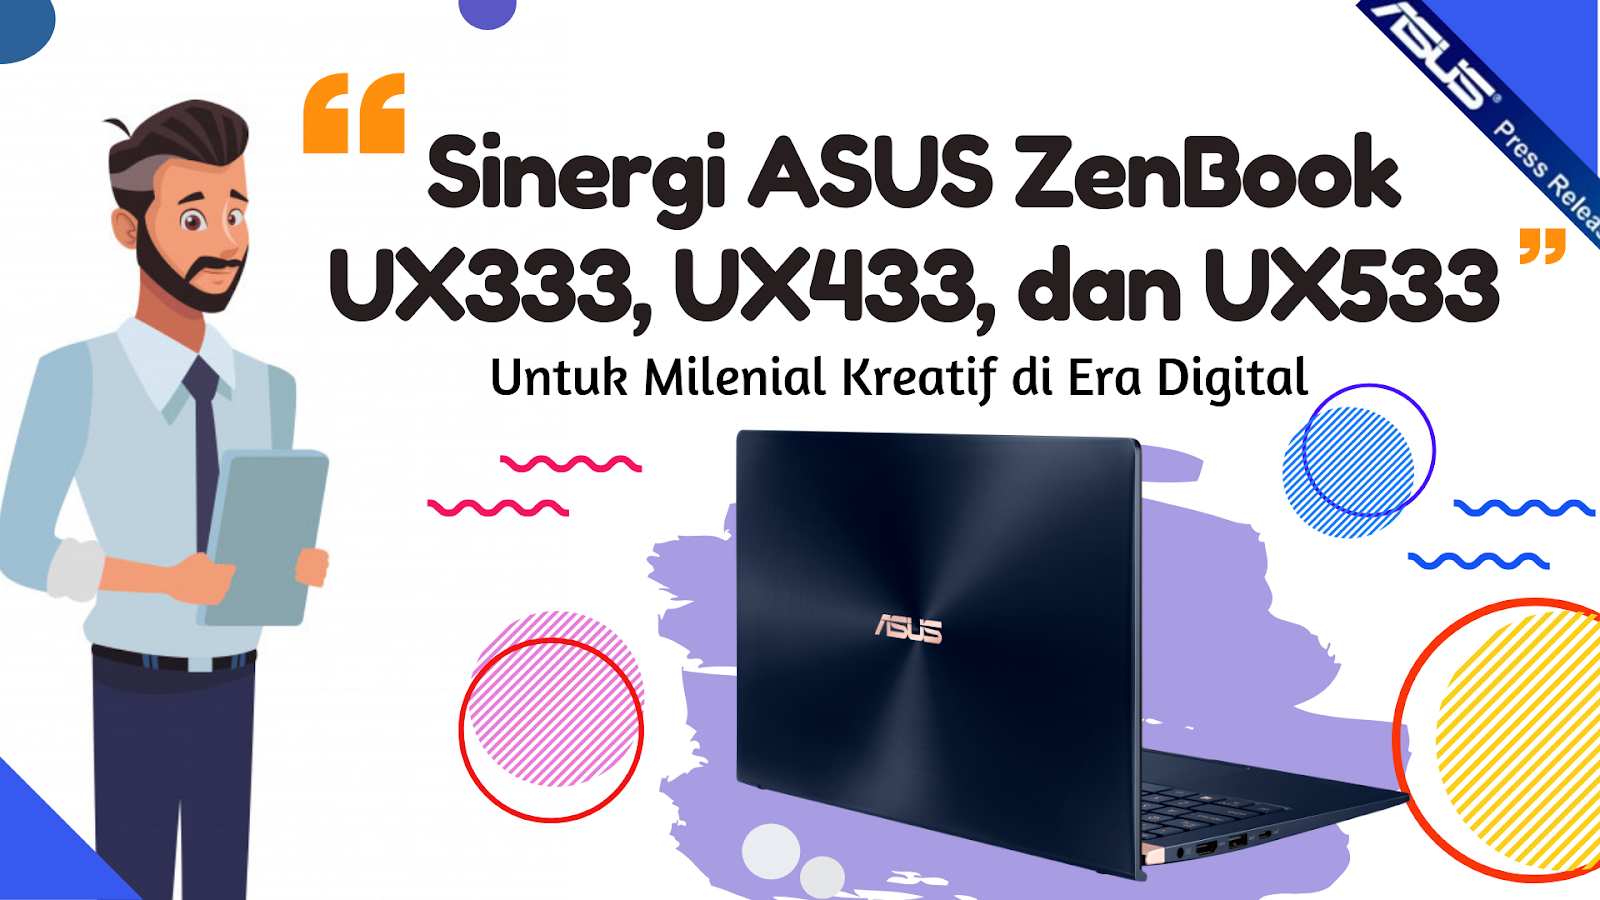 Asus ZenBook UX333, UX433, dan UX533 